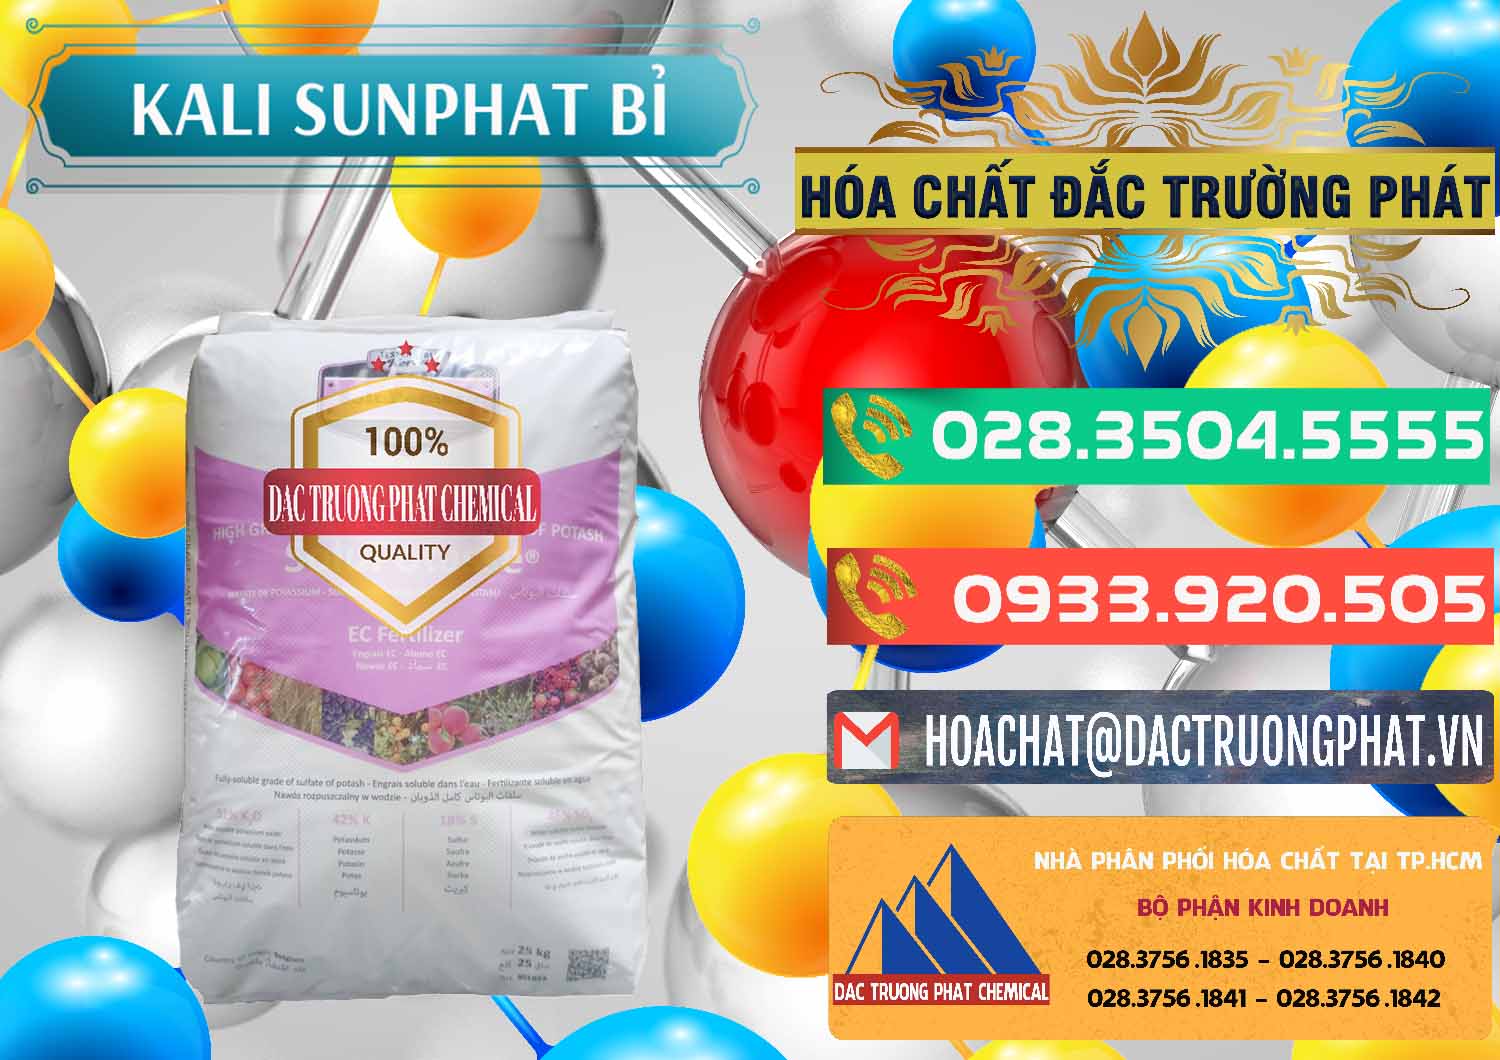 Nơi bán & cung ứng Kali Sunphat – K2SO4 Bỉ Belgium - 0406 - Cty chuyên bán & phân phối hóa chất tại TP.HCM - congtyhoachat.com.vn